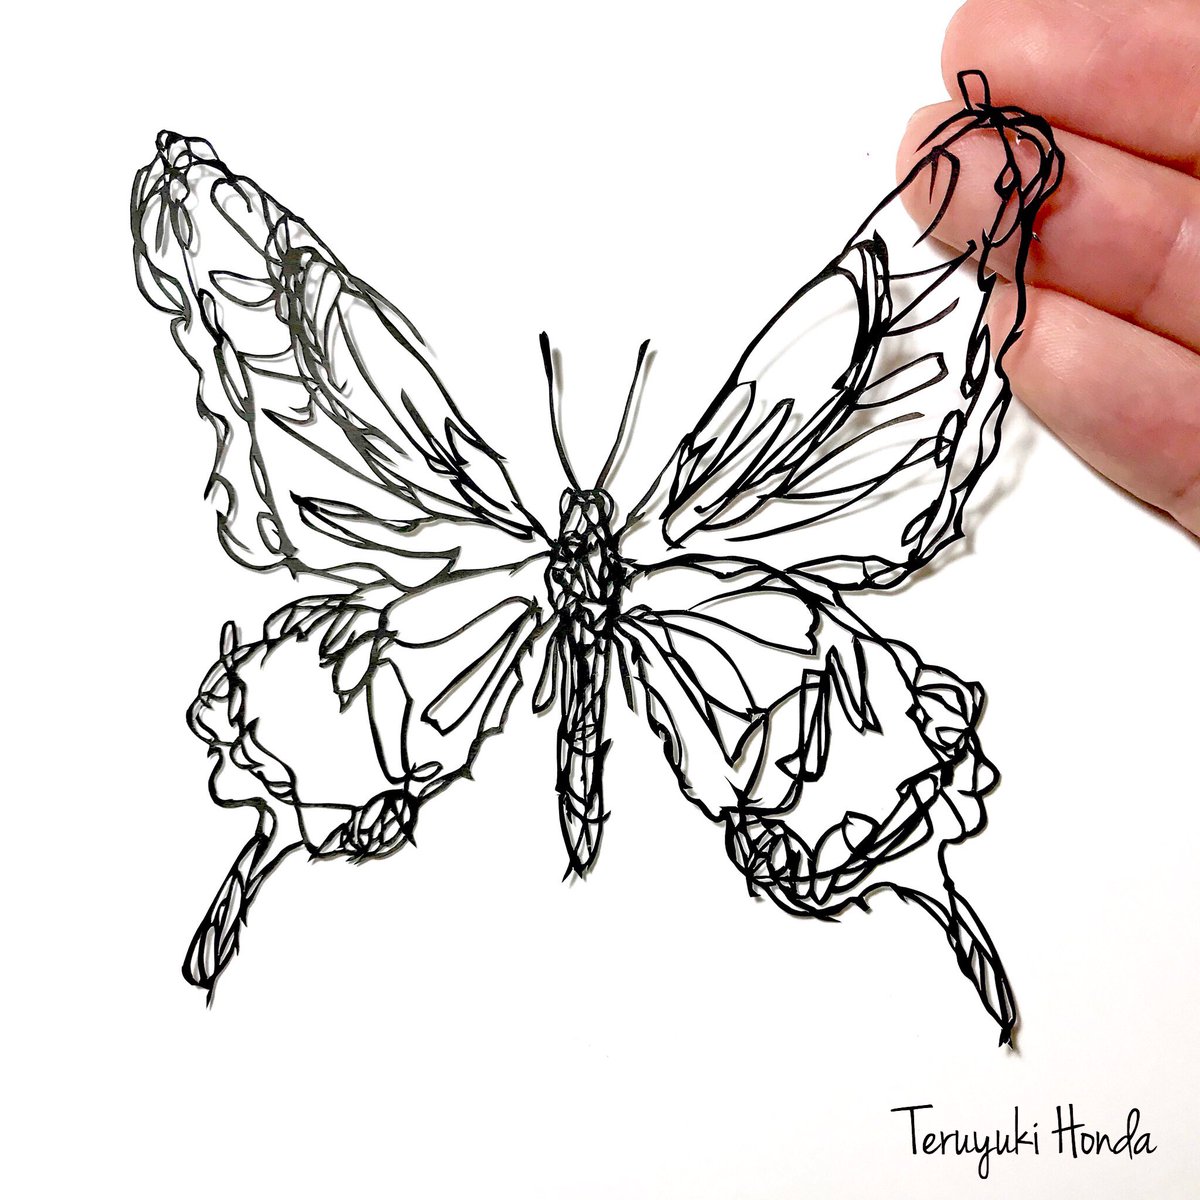 切り絵作家 Teruyuki Honda 自在展参 アゲハチョウ亜科 いわゆるアゲハチョウの切り絵 蝶は本当に難しい図案 この一年でも作風が少しづつ変化しています 自分が気づいていることから 気づいていないことまで その時々の変化を楽しみながら作品を